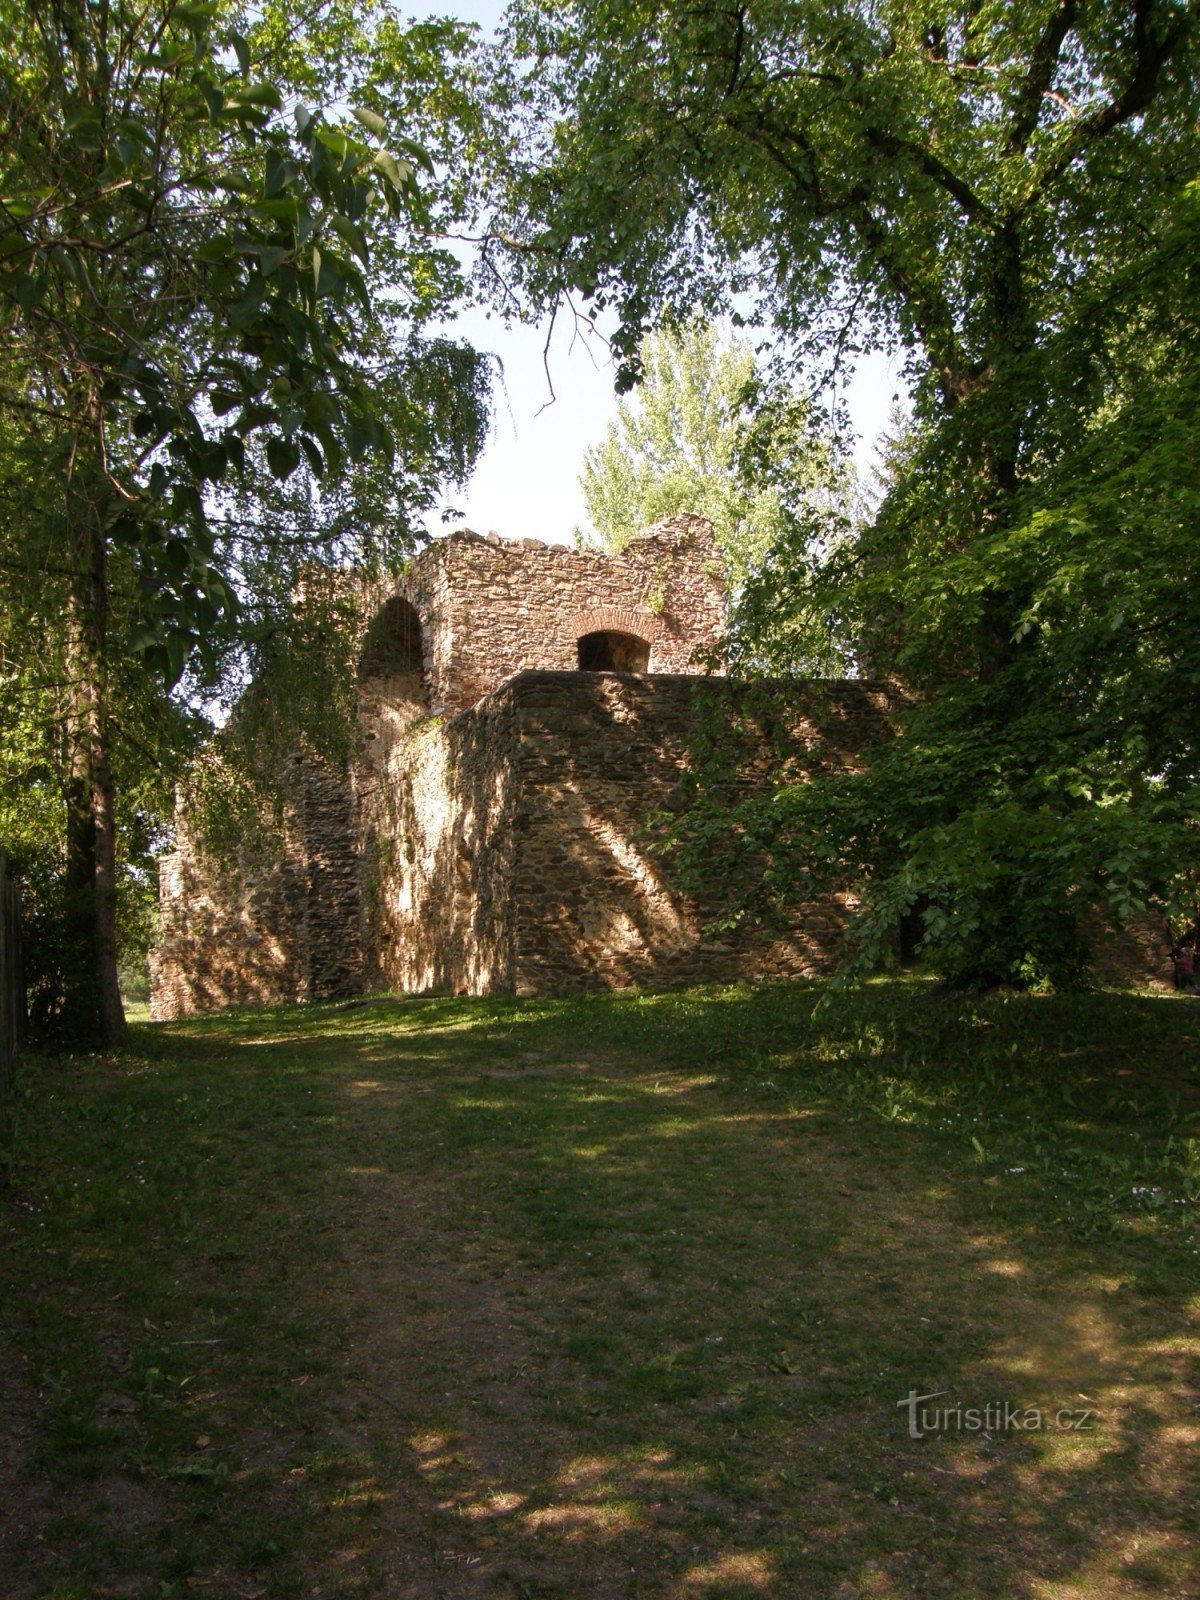 Fæstningen er omkring 70 m fra centrum af landsbyen.